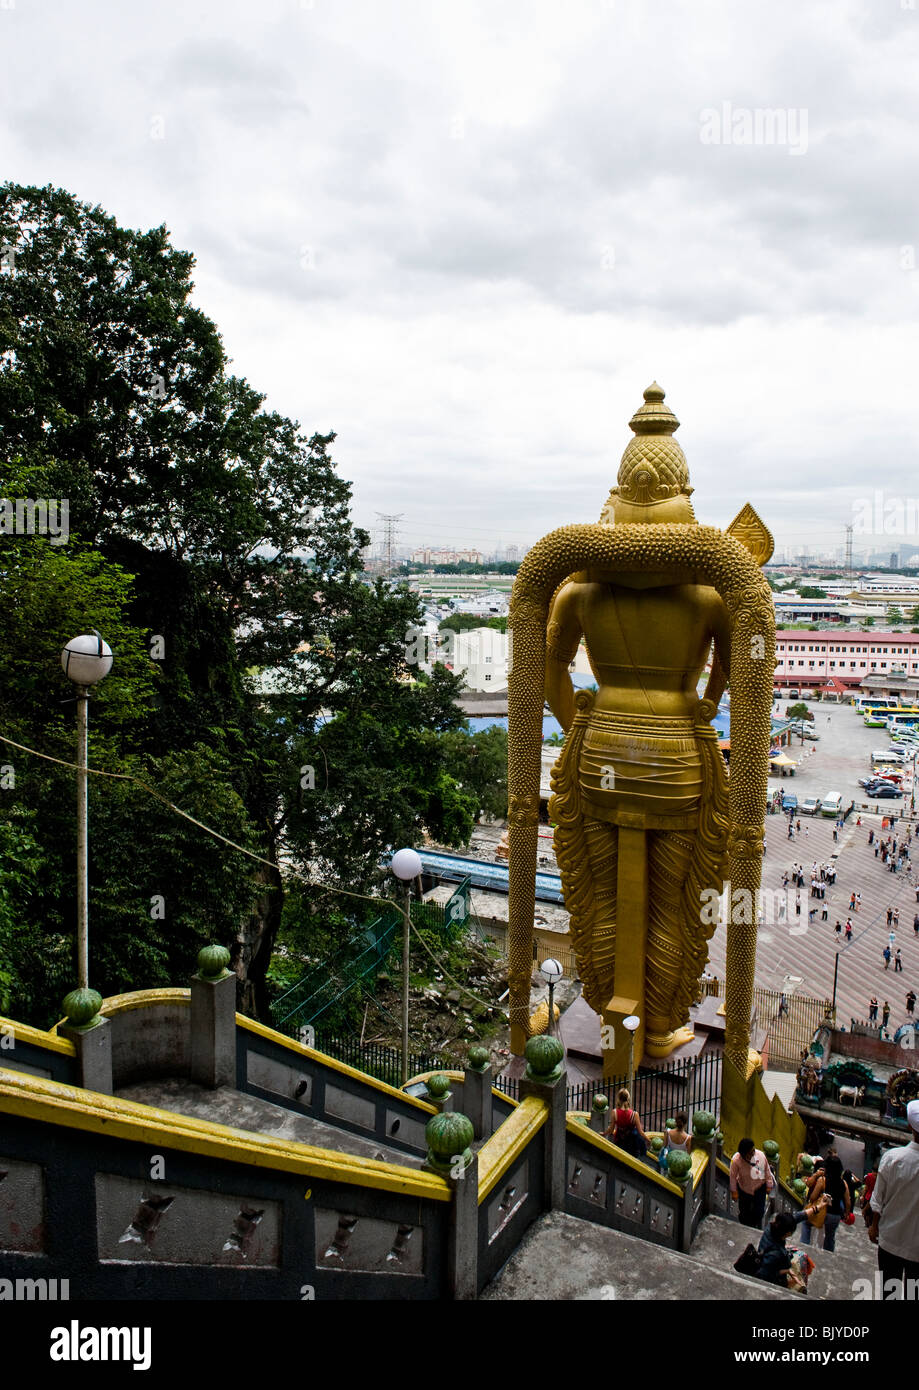 Rückseite der riesige goldene Statue von Lord Murugan mit Vordergrund Innenhof und Touristen wie vom Eingang des Batu-Höhlen zu sehen. Stockfoto